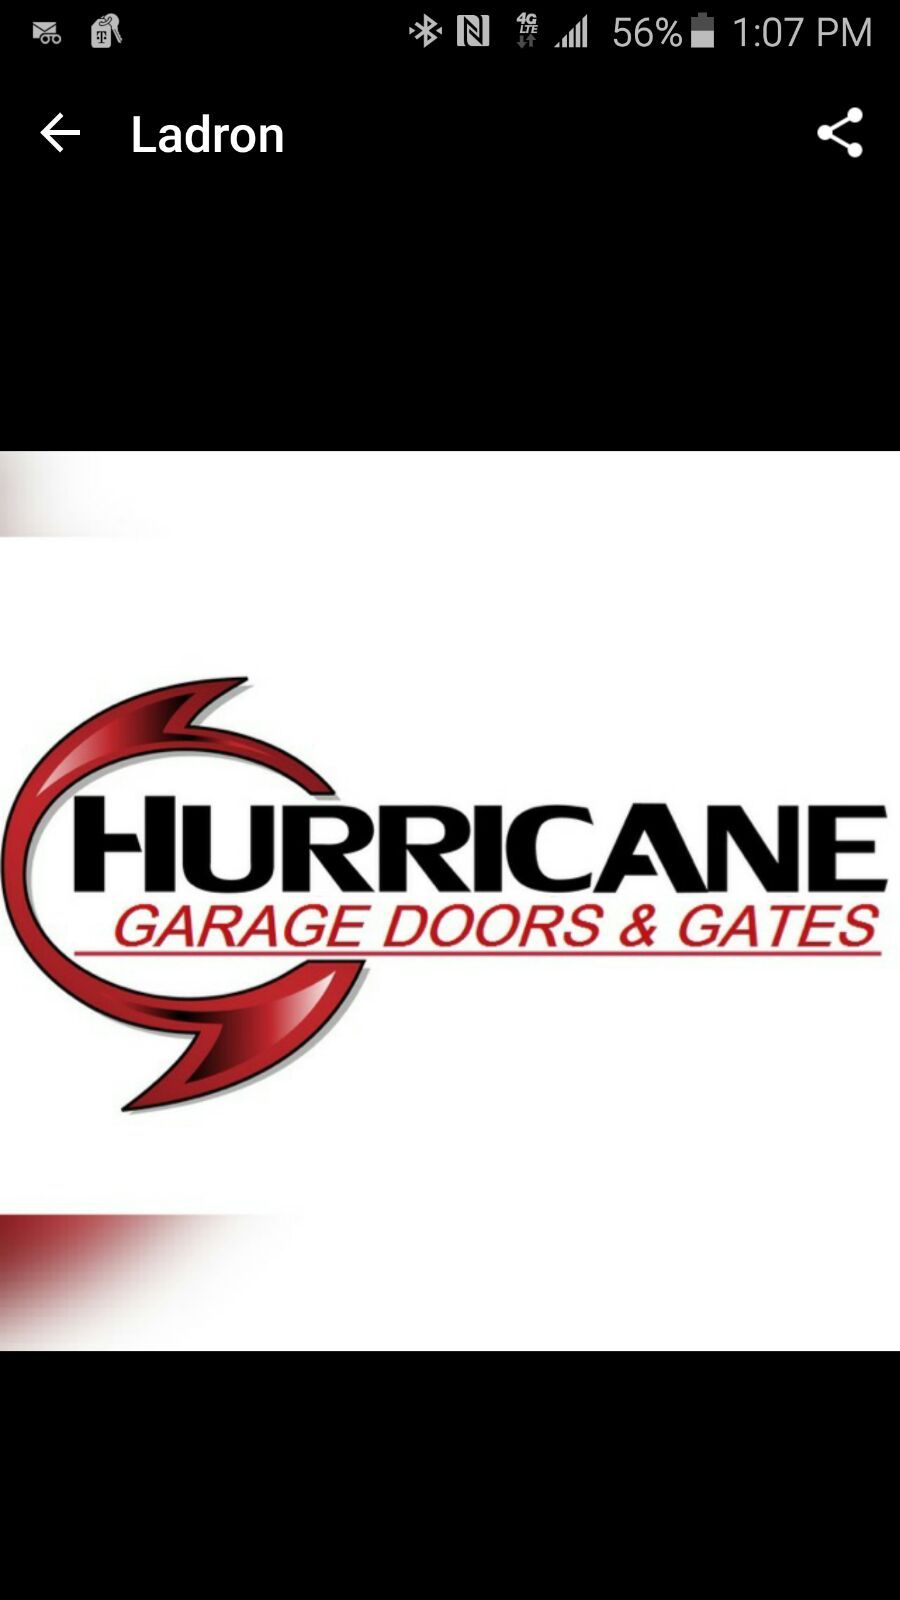 Hurricane Garage Doors Inc